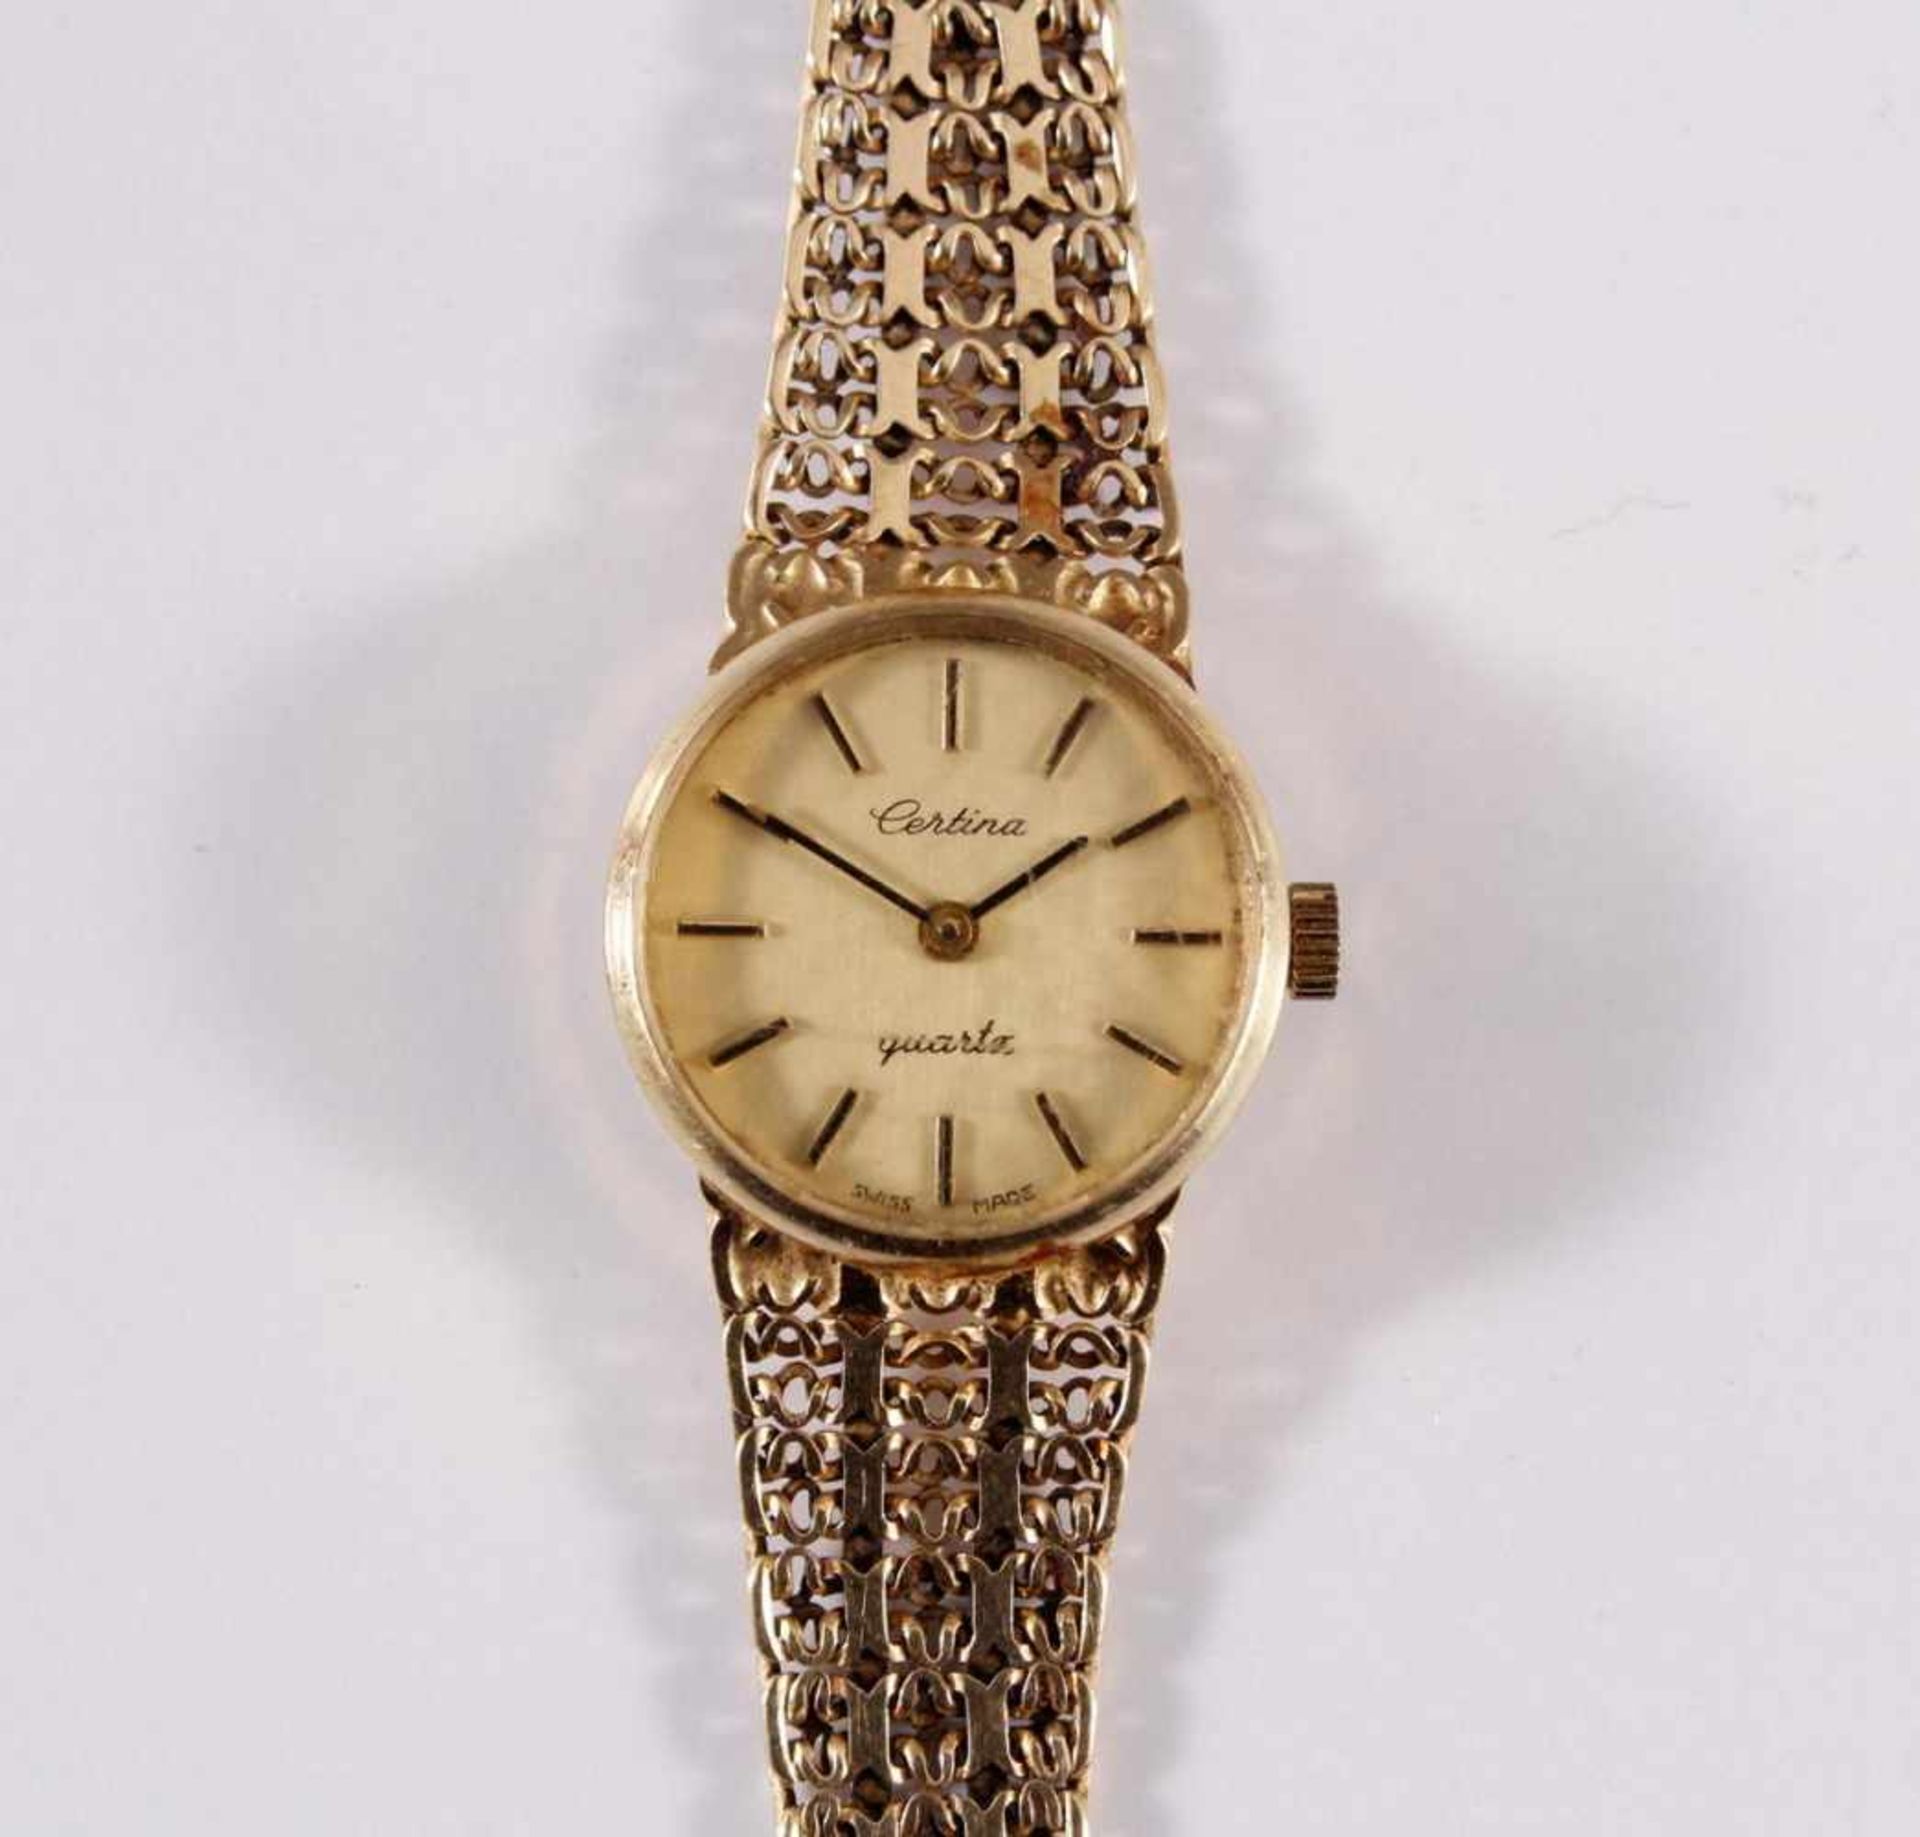 Damenarmbanduhr der Marke Sertina, 14 kt GelbgoldAm Verschluss punziert 585, auf dem Uhrendeckel - Bild 2 aus 5